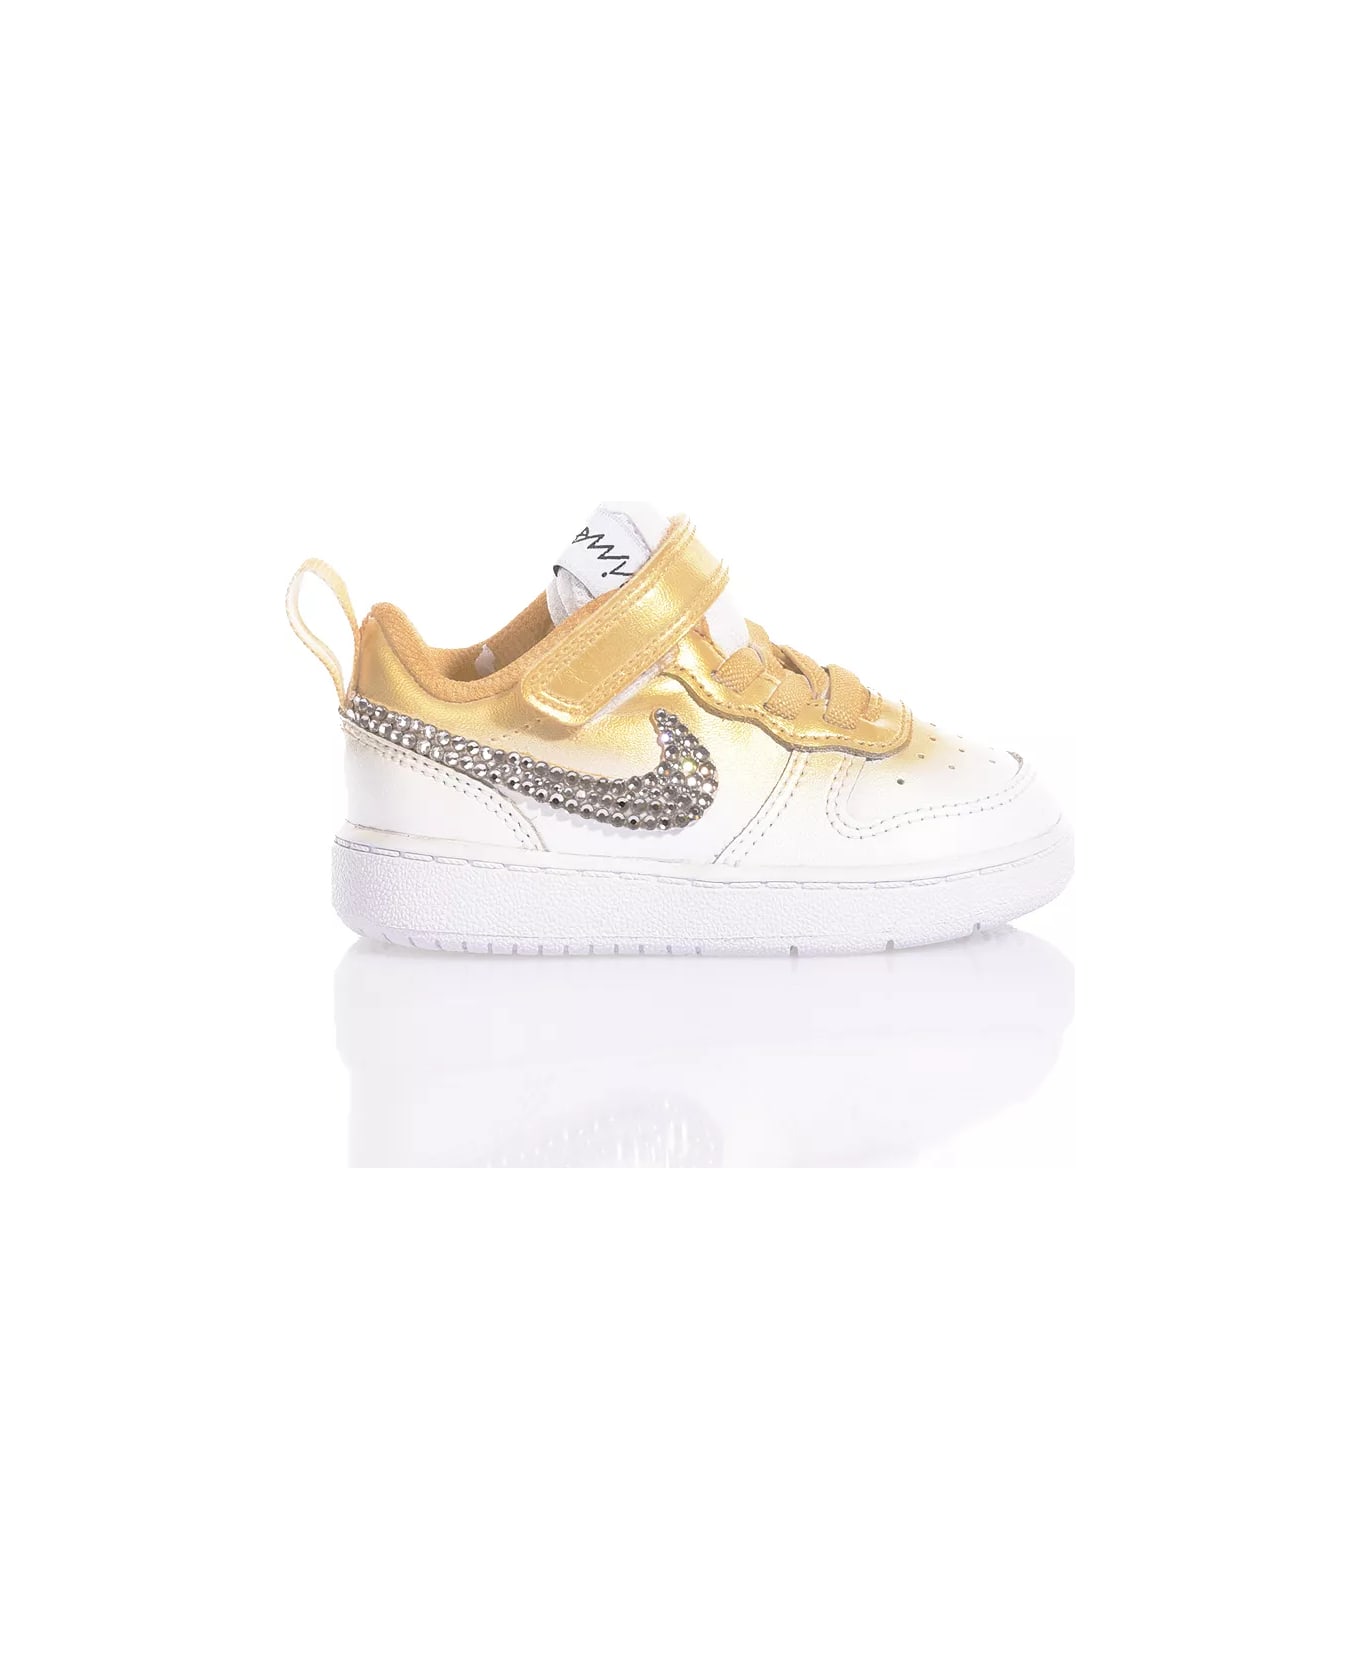 Mimanera Nike Baby Shade Gold Custom